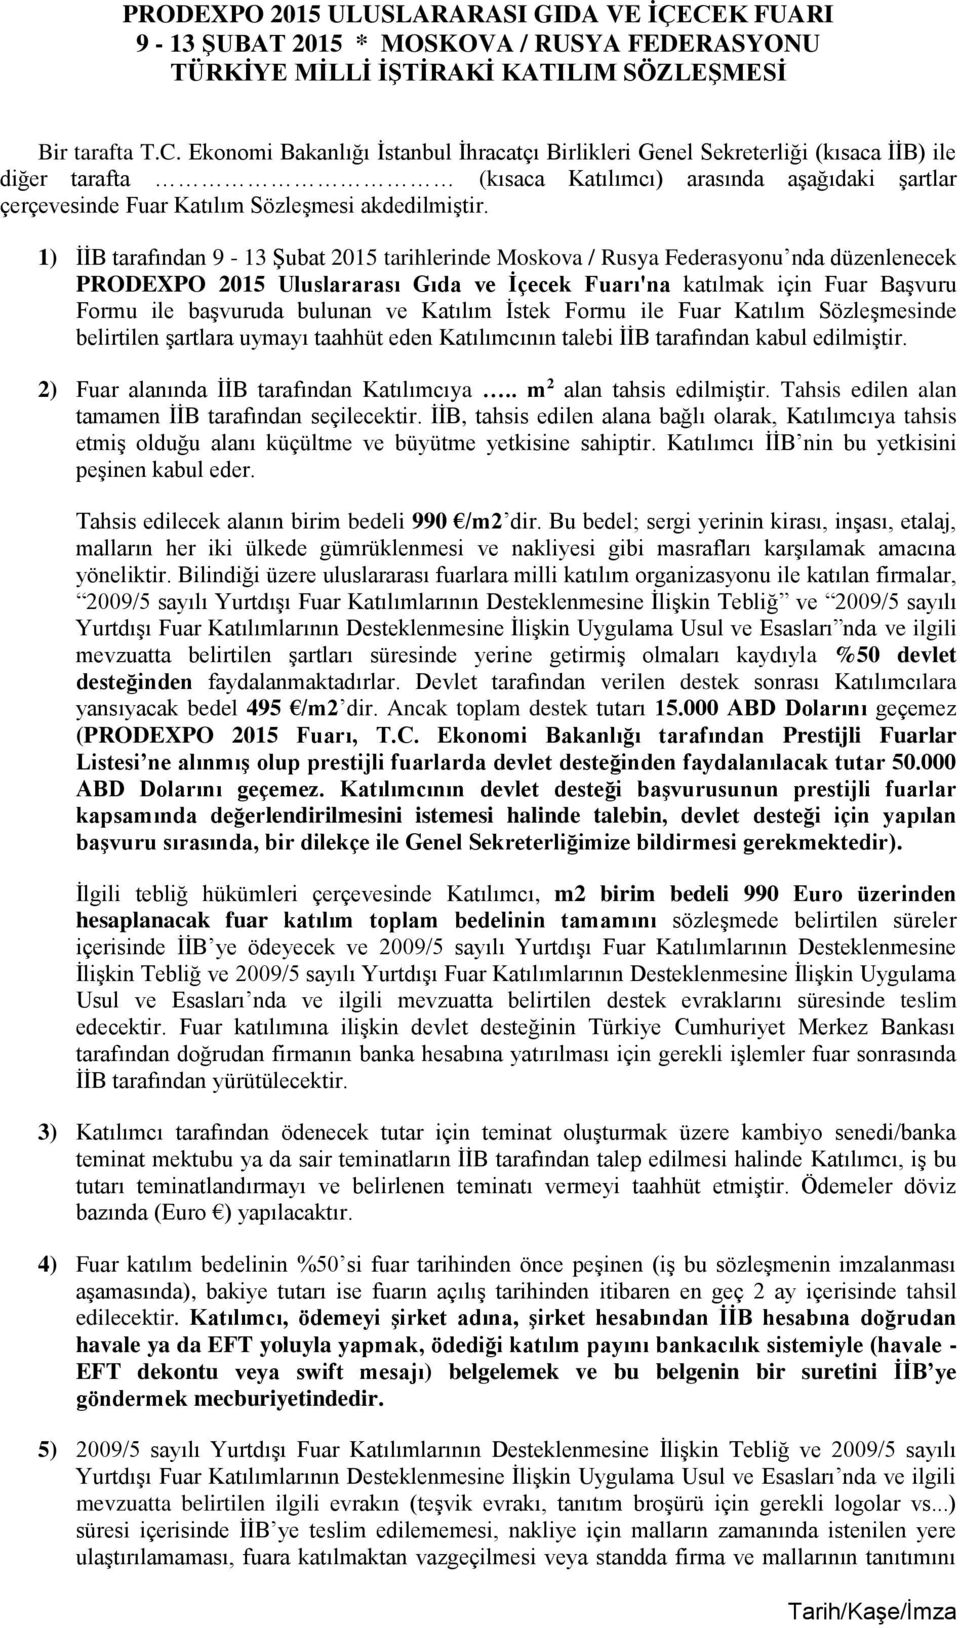 Ekonomi Bakanlığı İstanbul İhracatçı Birlikleri Genel Sekreterliği (kısaca İİB) ile diğer tarafta (kısaca Katılımcı) arasında aşağıdaki şartlar çerçevesinde Fuar Katılım Sözleşmesi akdedilmiştir.